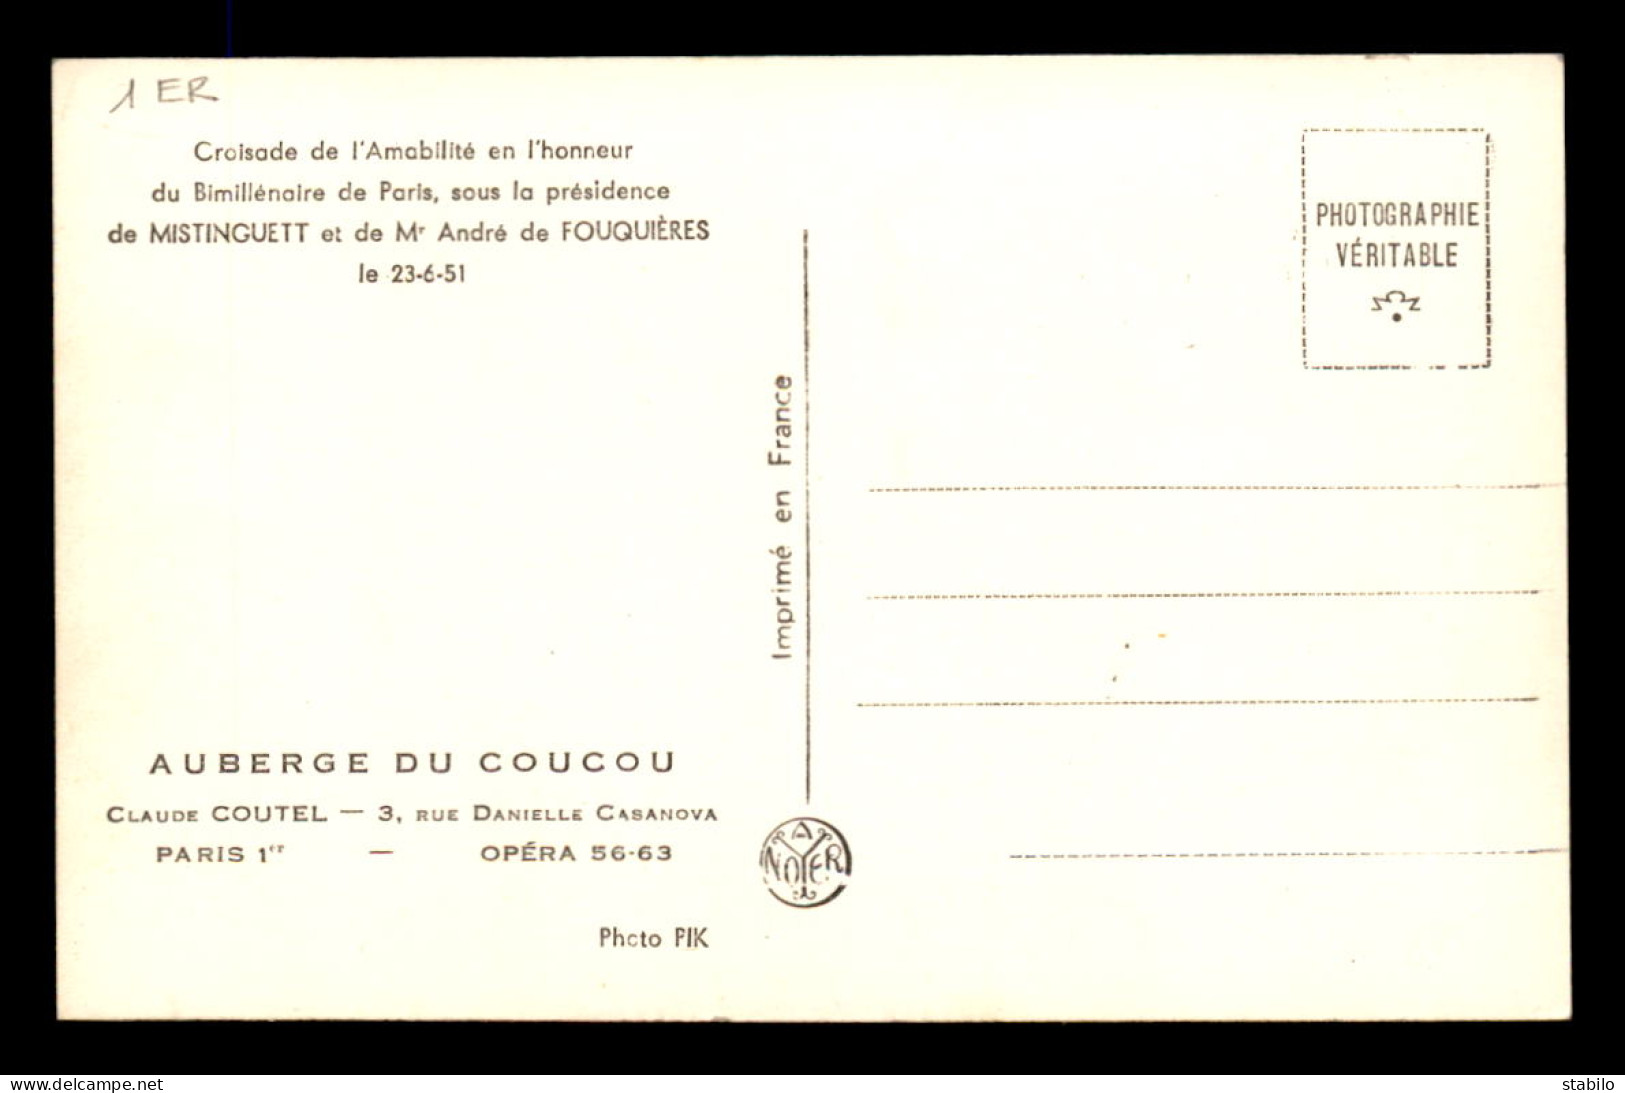 75 - PARIS 1ER - AUBERGE DU COUCOU, 3 RUE CASANOVA - CROISADE DE L'AMABILITE JUIN 1951 - MISTINGUETT ET A. DE FOUQUIERES - District 01